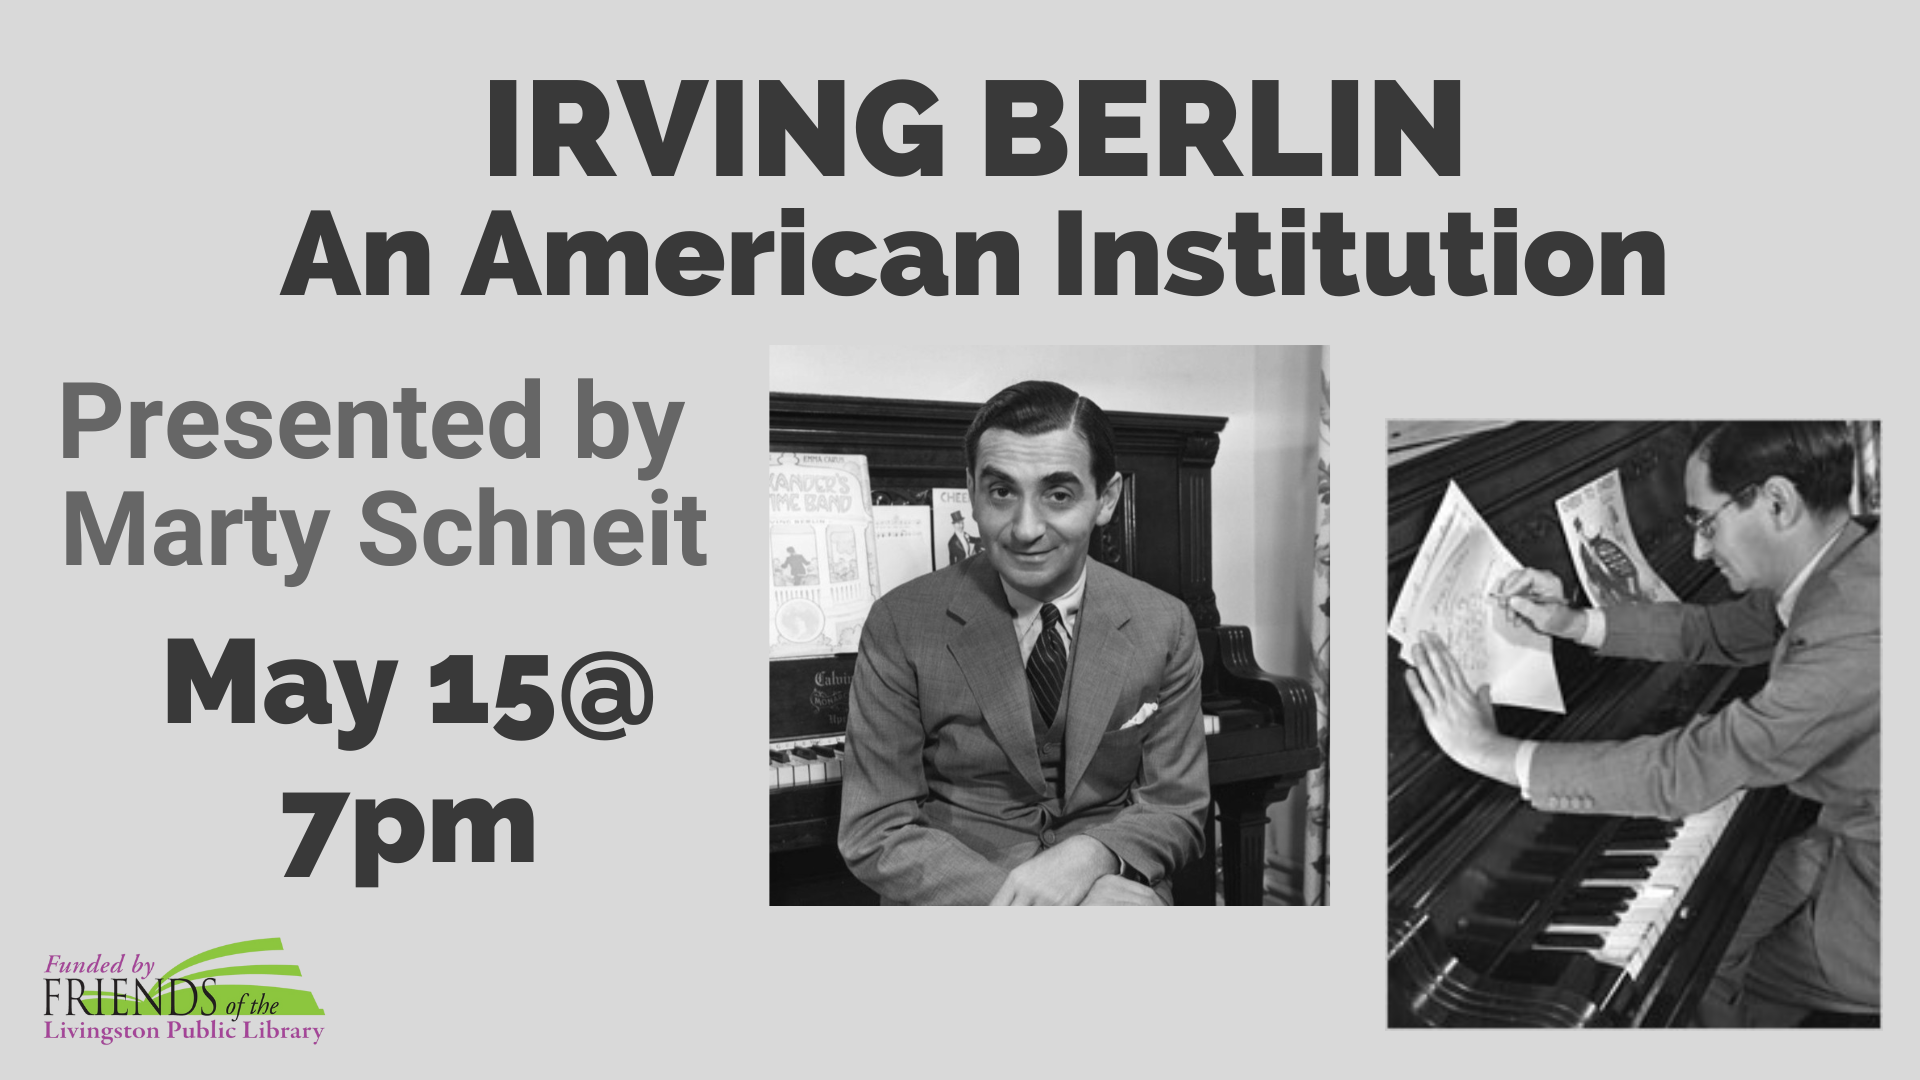 A talk on Irving Berlin